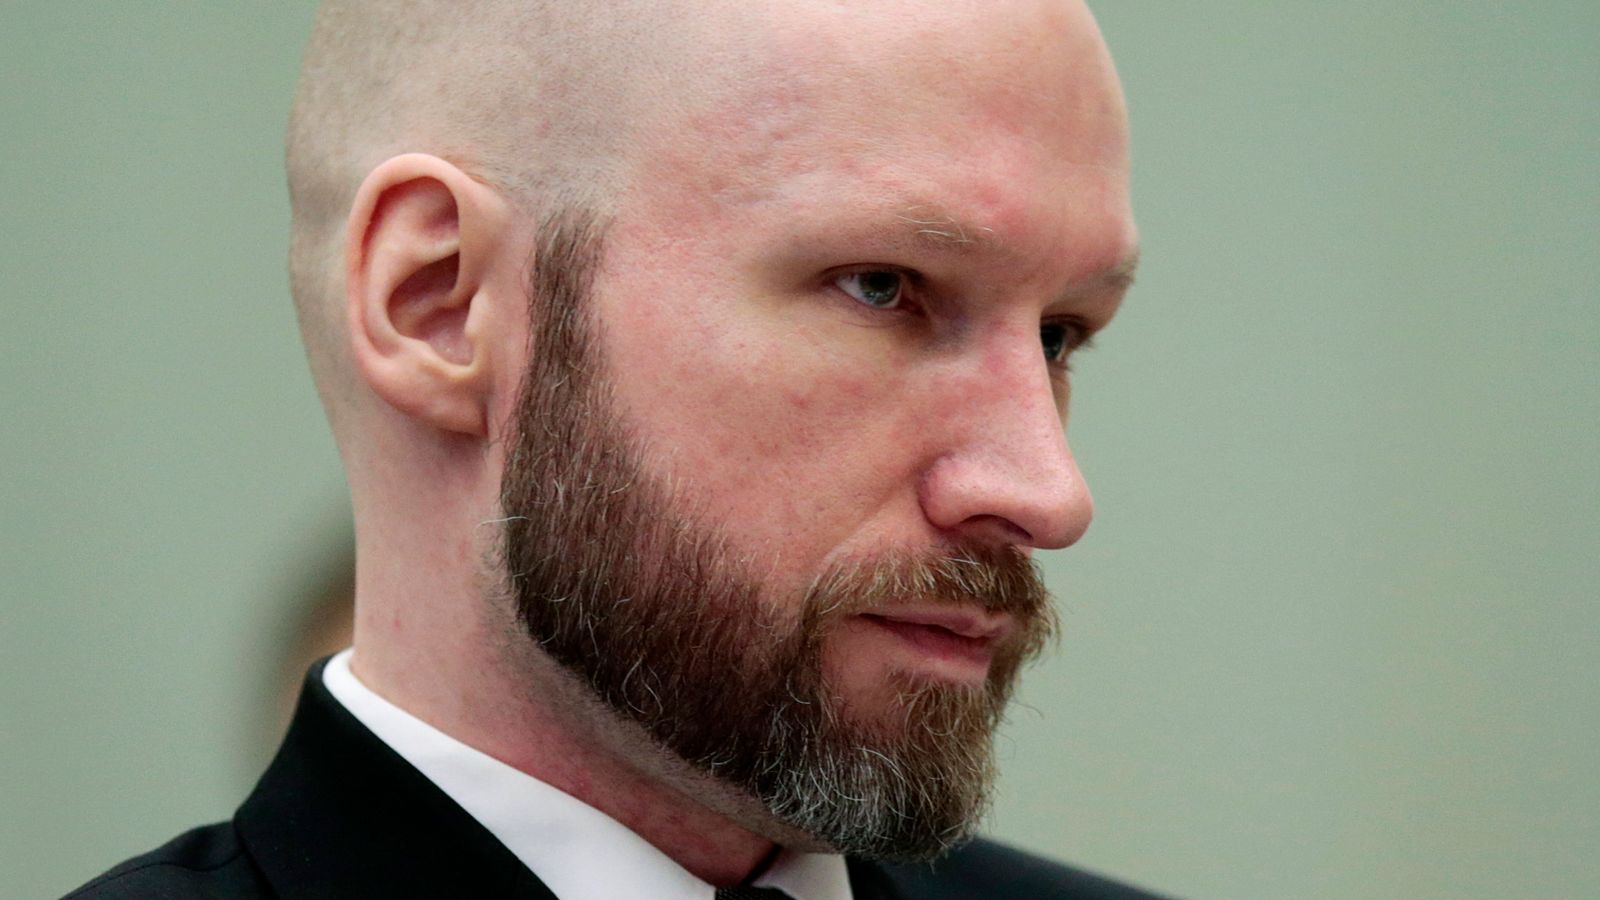 Massemorder Anders Breivik saksøker den norske regjeringen igjen i et forsøk på å få slutt på isolasjonen |  Verdensnyheter og mer Siste nytt her